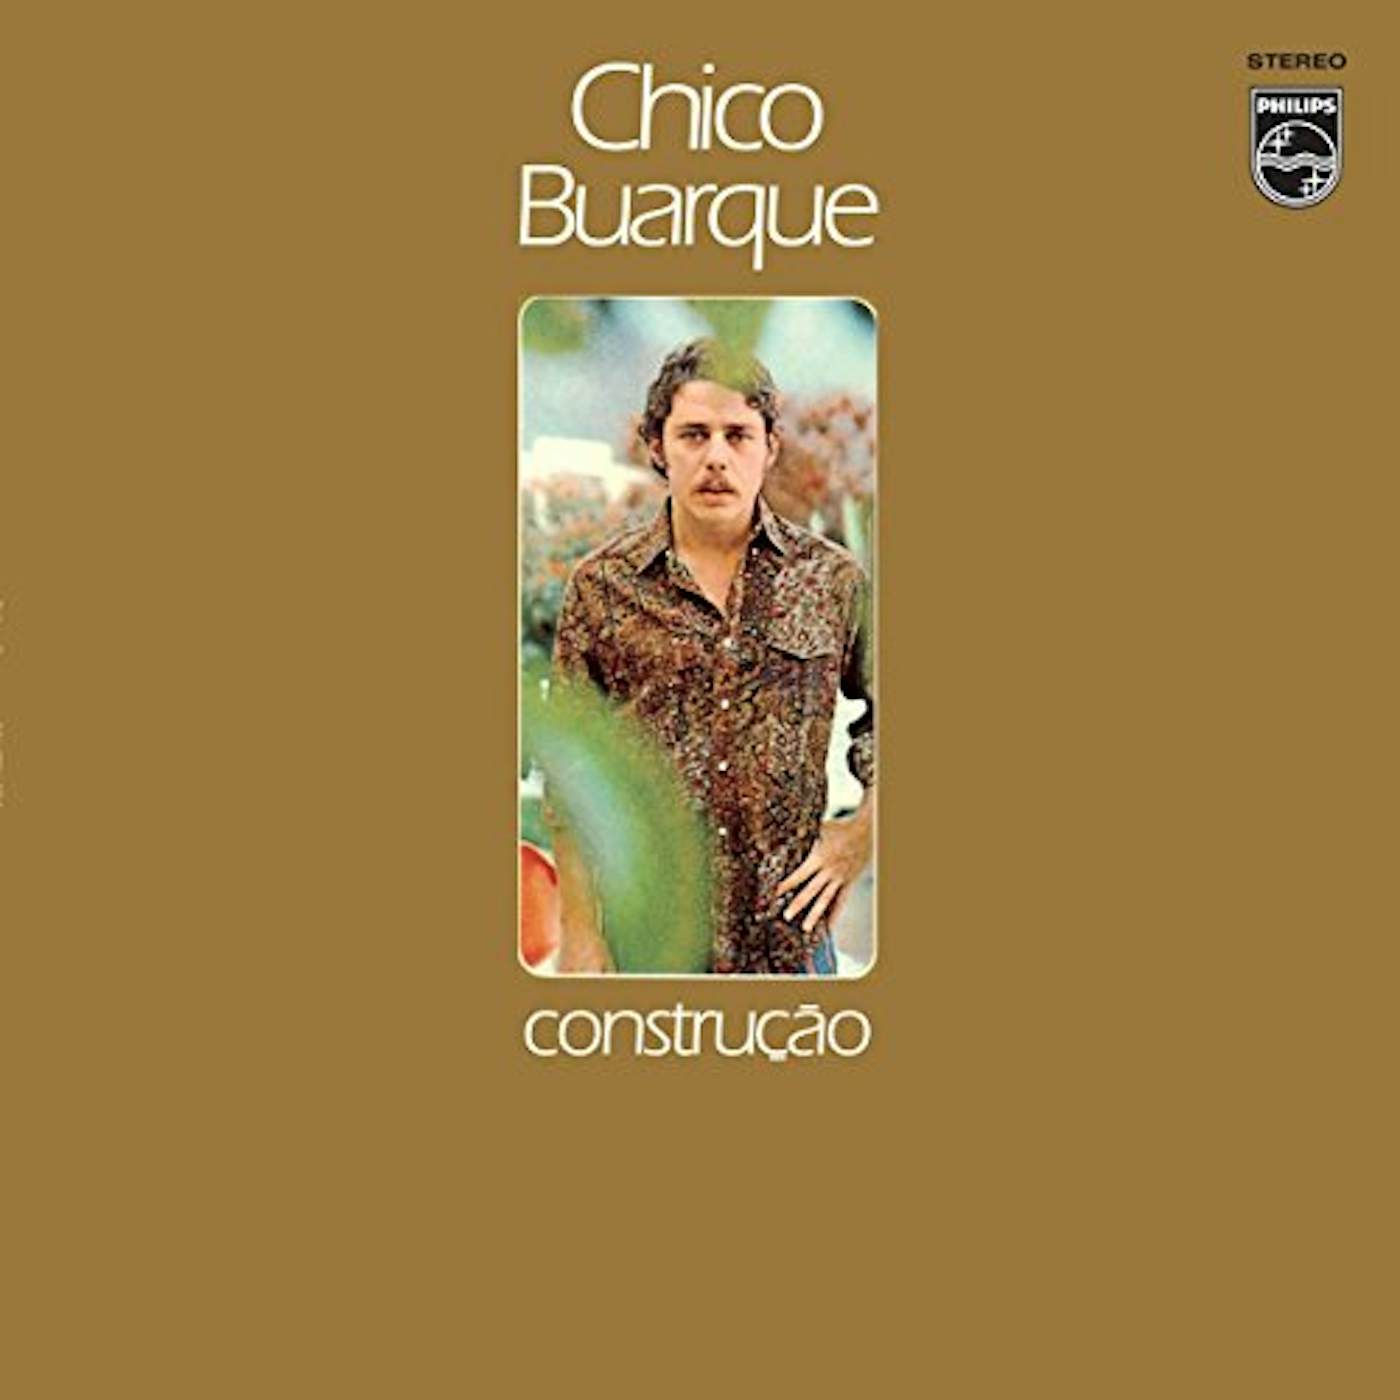 Chico Buarque CONSTRUCAO Vinyl Record